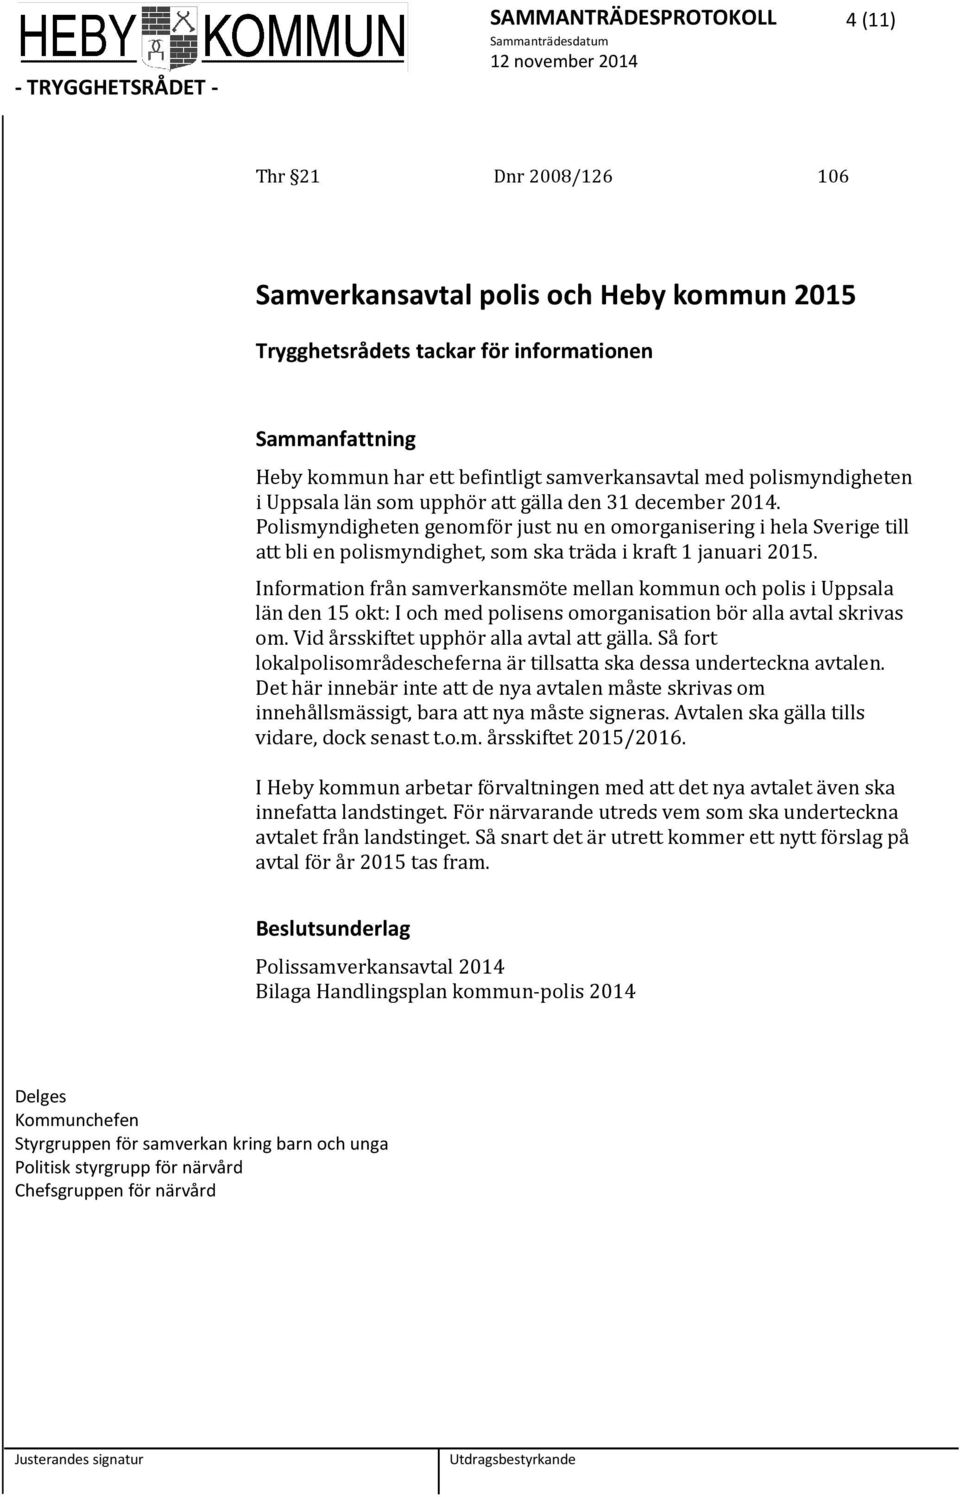 Polismyndigheten genomför just nu en omorganisering i hela Sverige till att bli en polismyndighet, som ska träda i kraft 1 januari 2015.